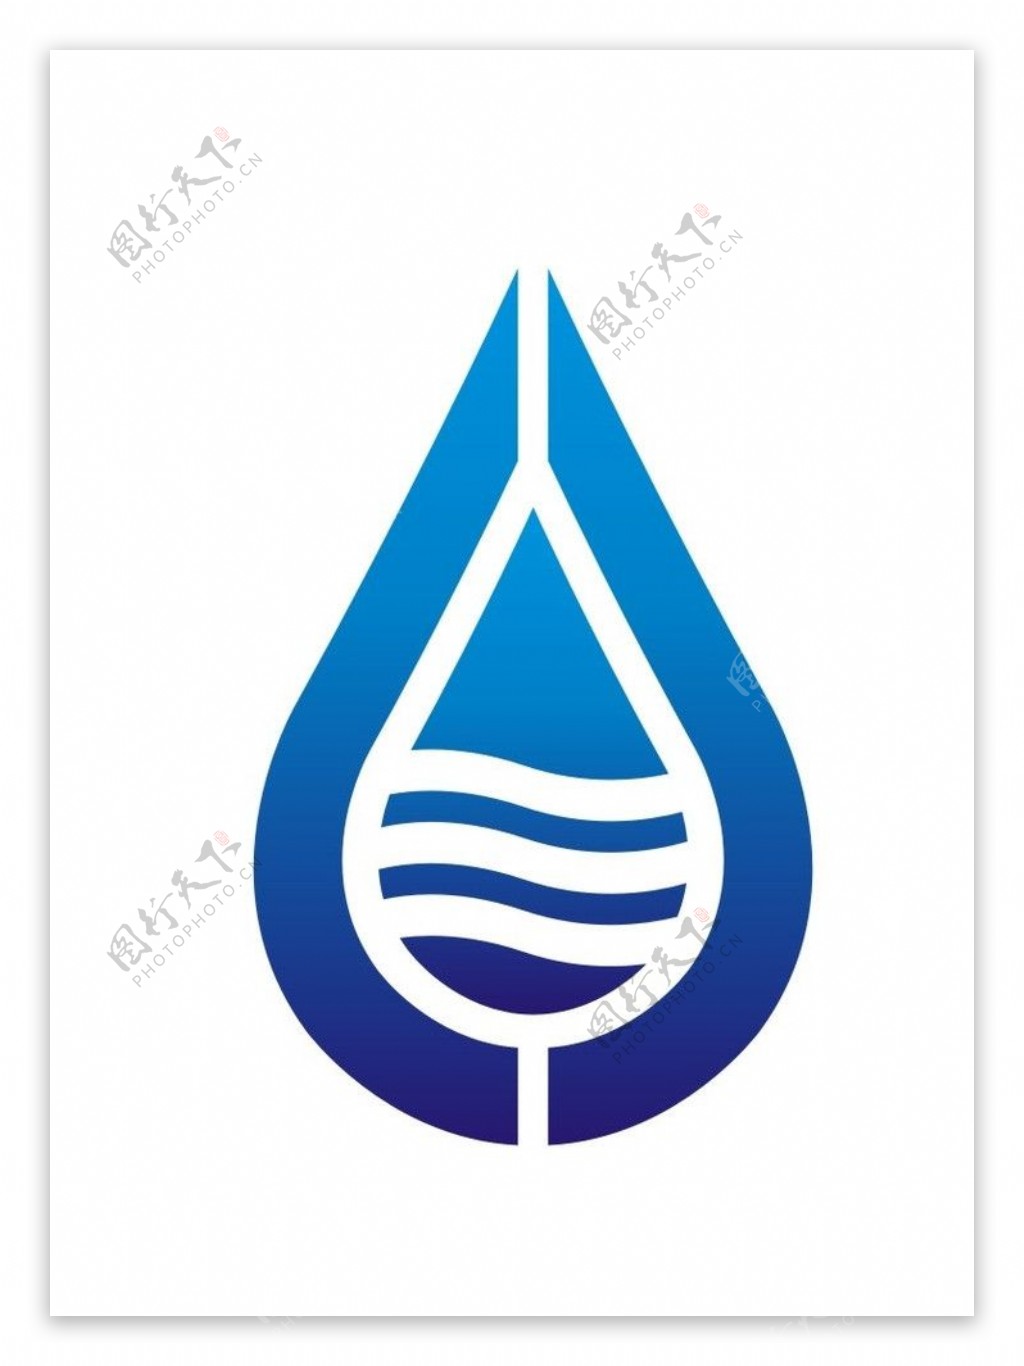 双字母C组成的矿泉水公司标示图片